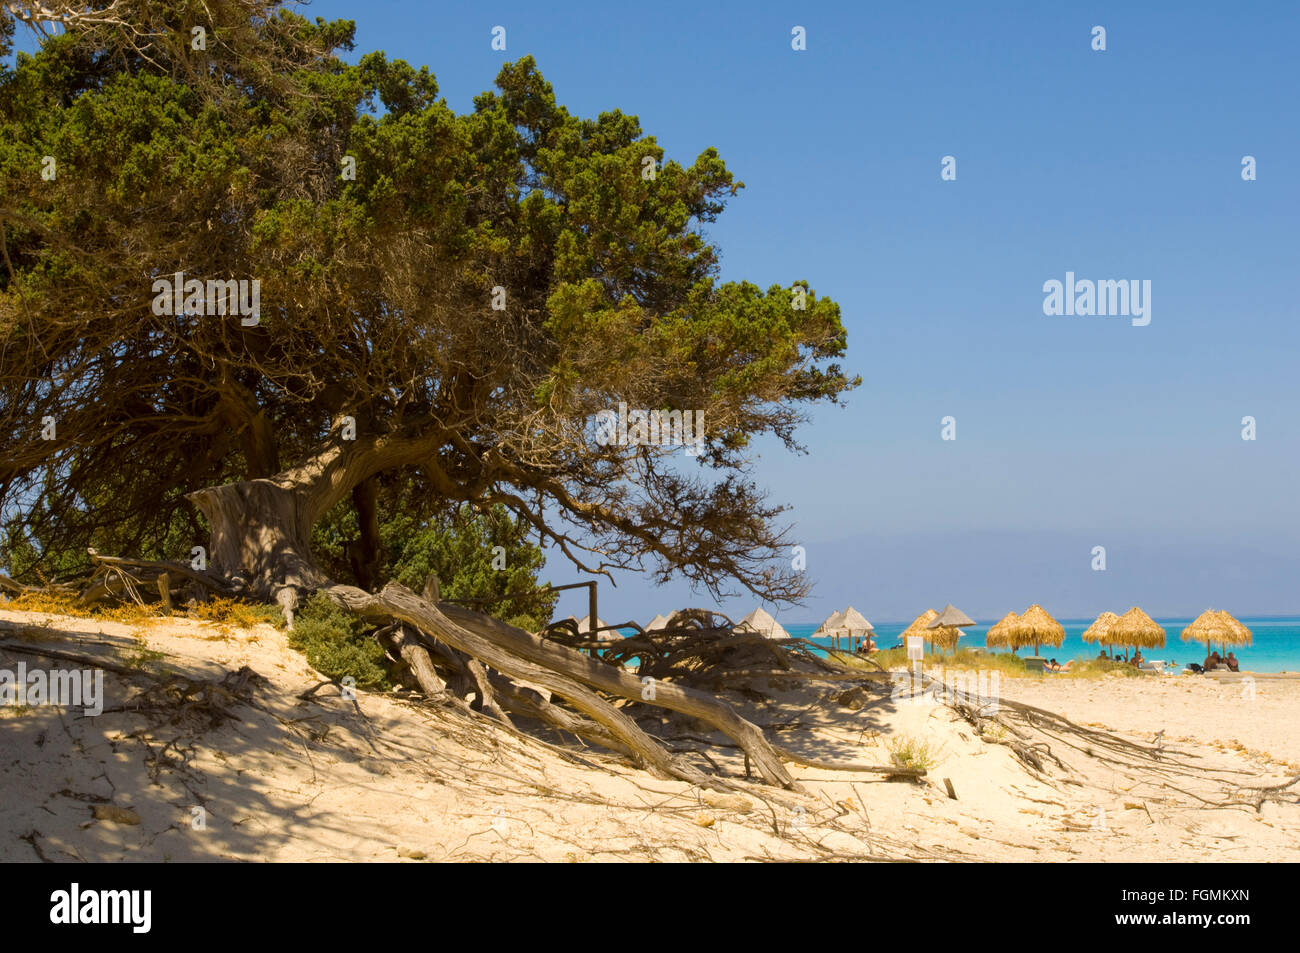 Griechenland, Kreta, Ireapetra, die unbewohnte Insel Chrissi ist Stechwacholder bewachsen mit dessen Wurzelwerk den Sandboden ser Foto de stock